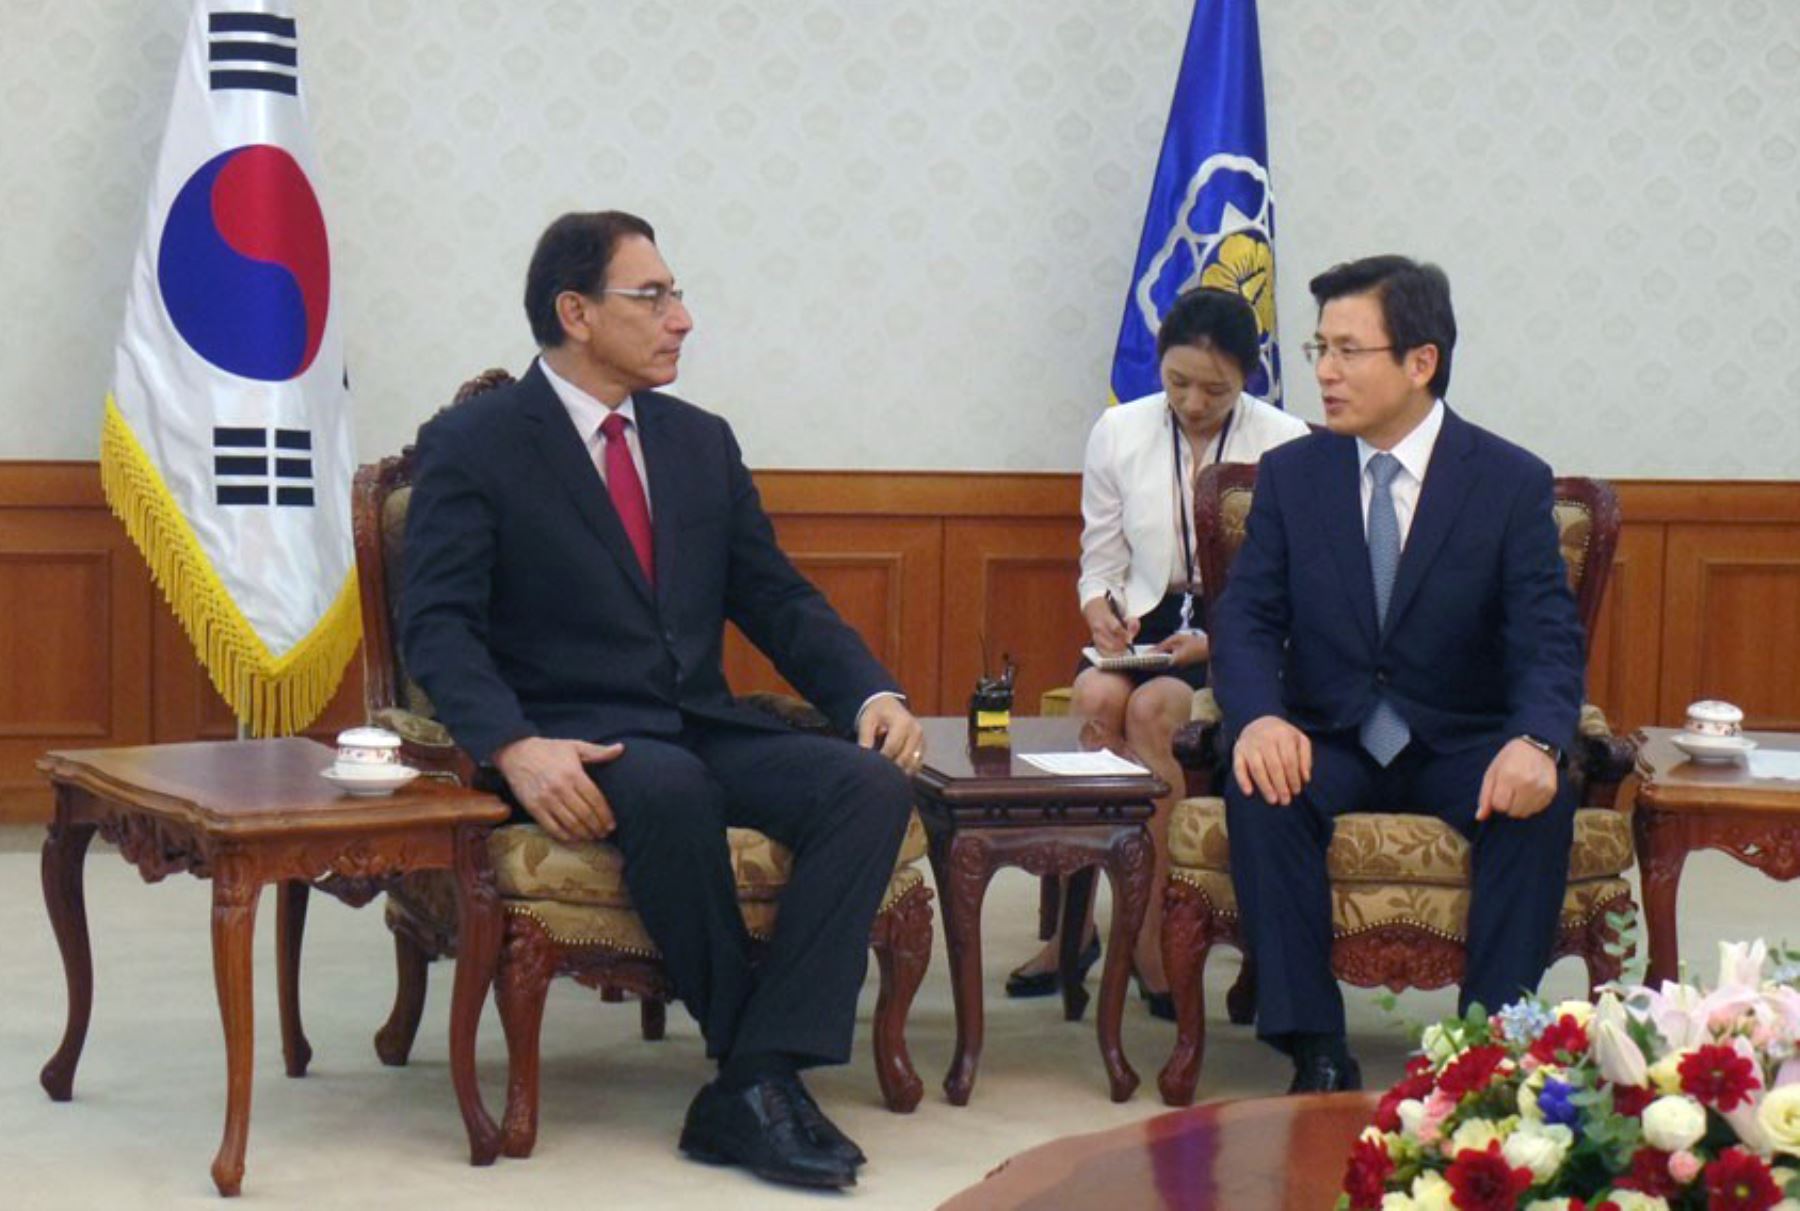 El vicepresidente del Perú, Martín Vizcarra, se reunió en Seúl con el primer ministro de Corea del Sur, Hwang Kyo-ahn. Difusión